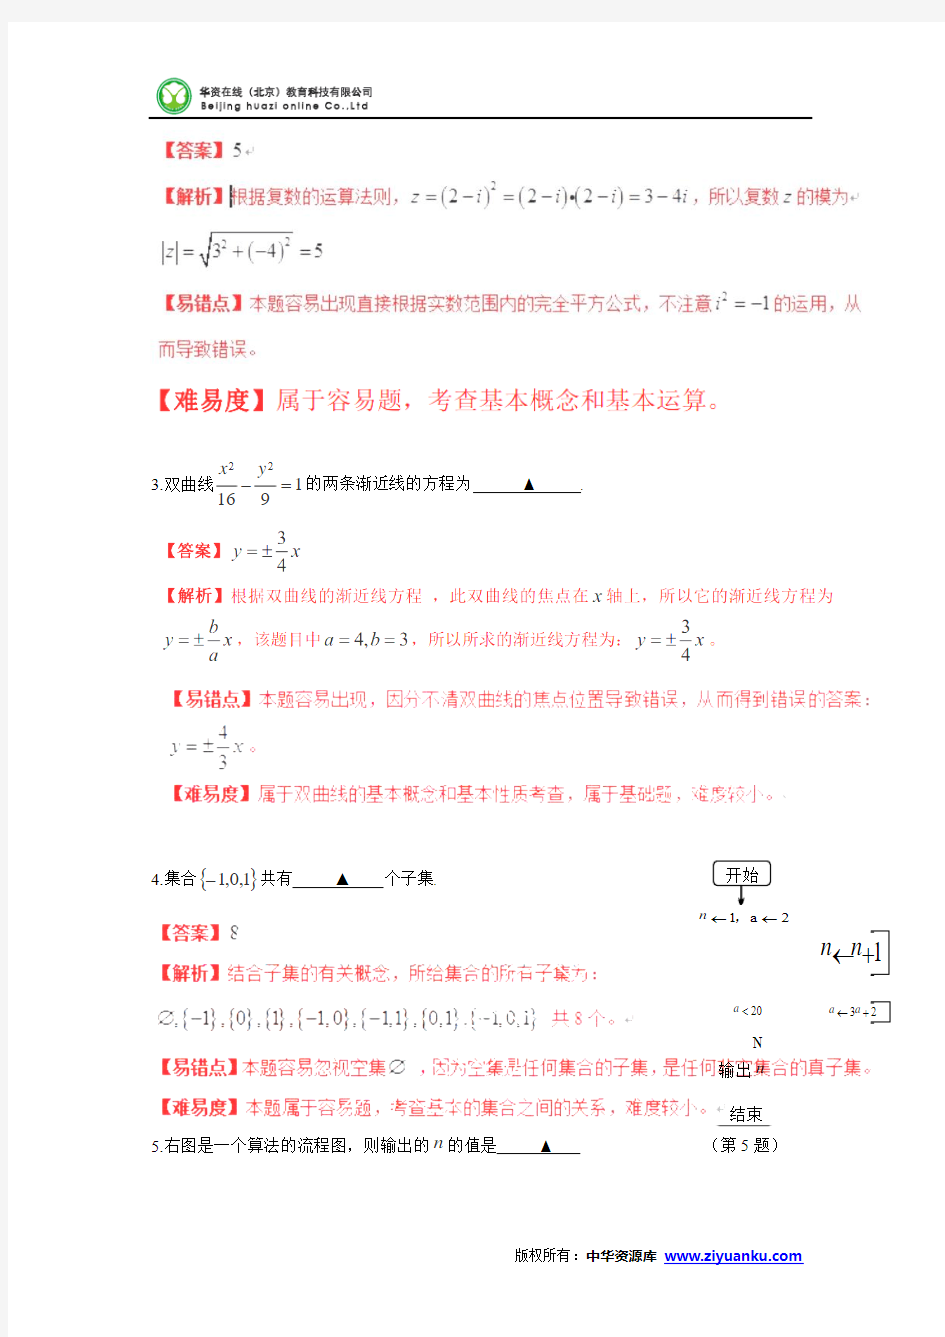 2013年高考真题——数学(江苏卷)解析版 Word版含答案